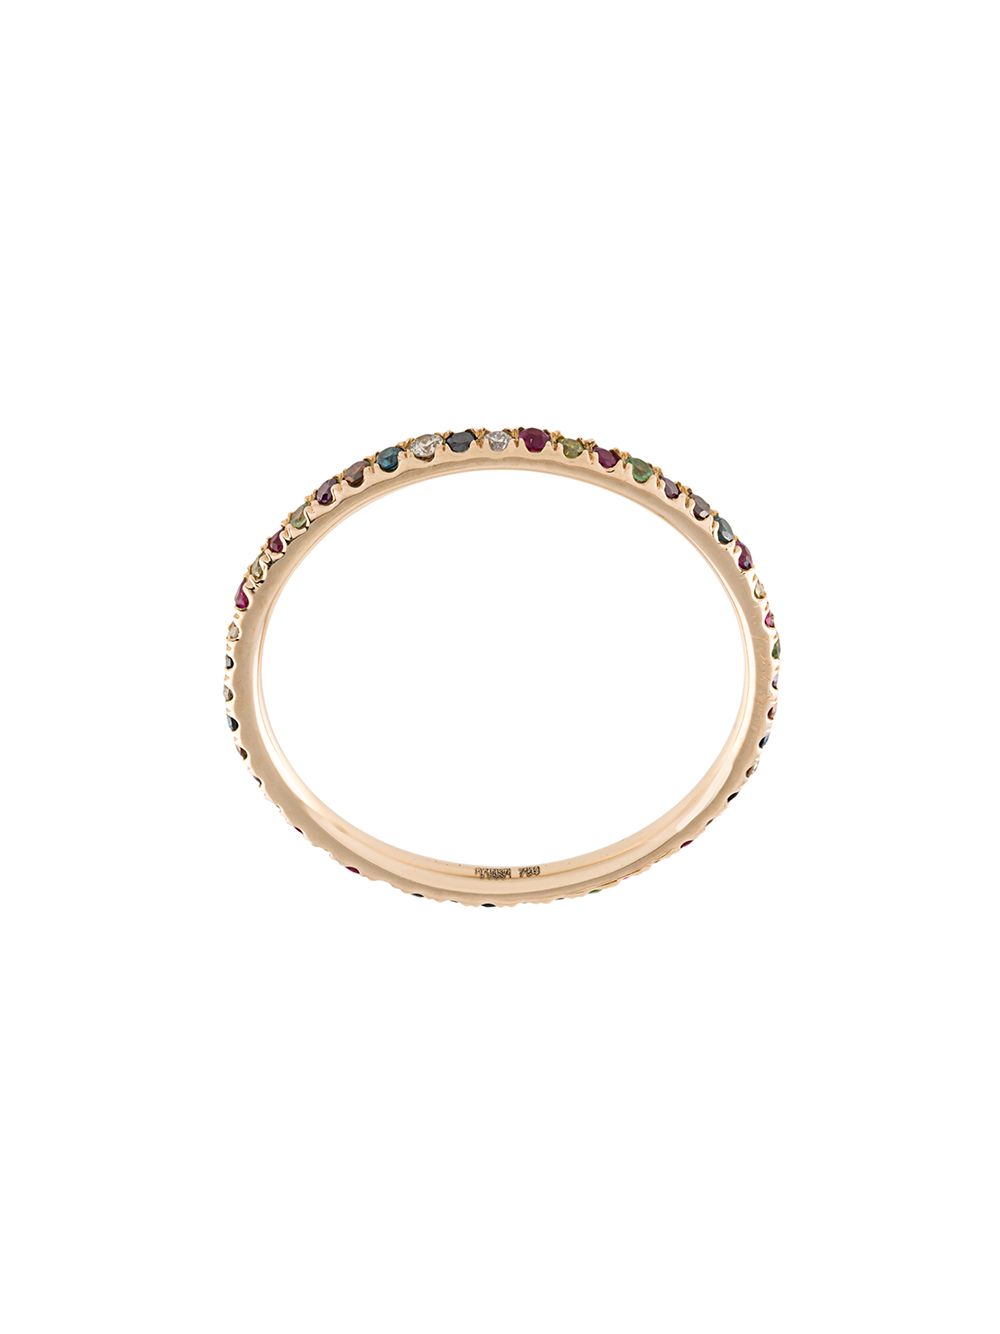 фото Ileana makri кольцо 'rainbow' из розового золота 18к